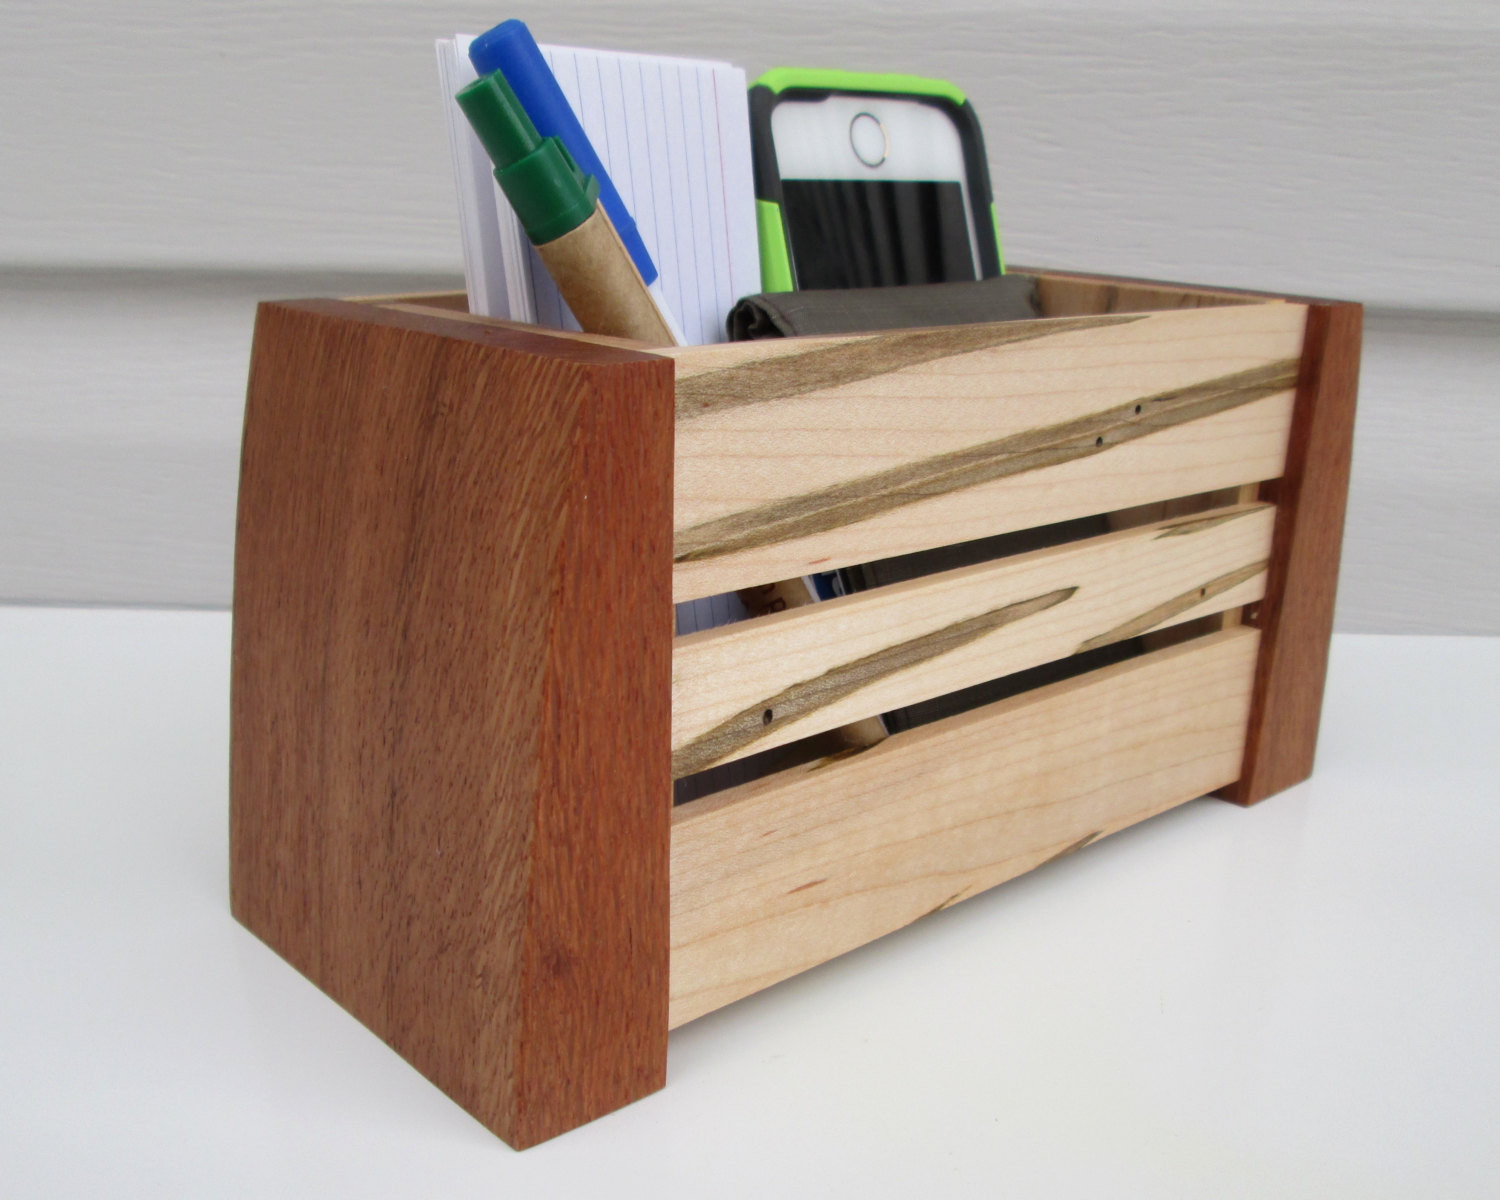 Wood Desk Organizer
 Desk Caddy Desk Organizer Wood Crate Storage Box by